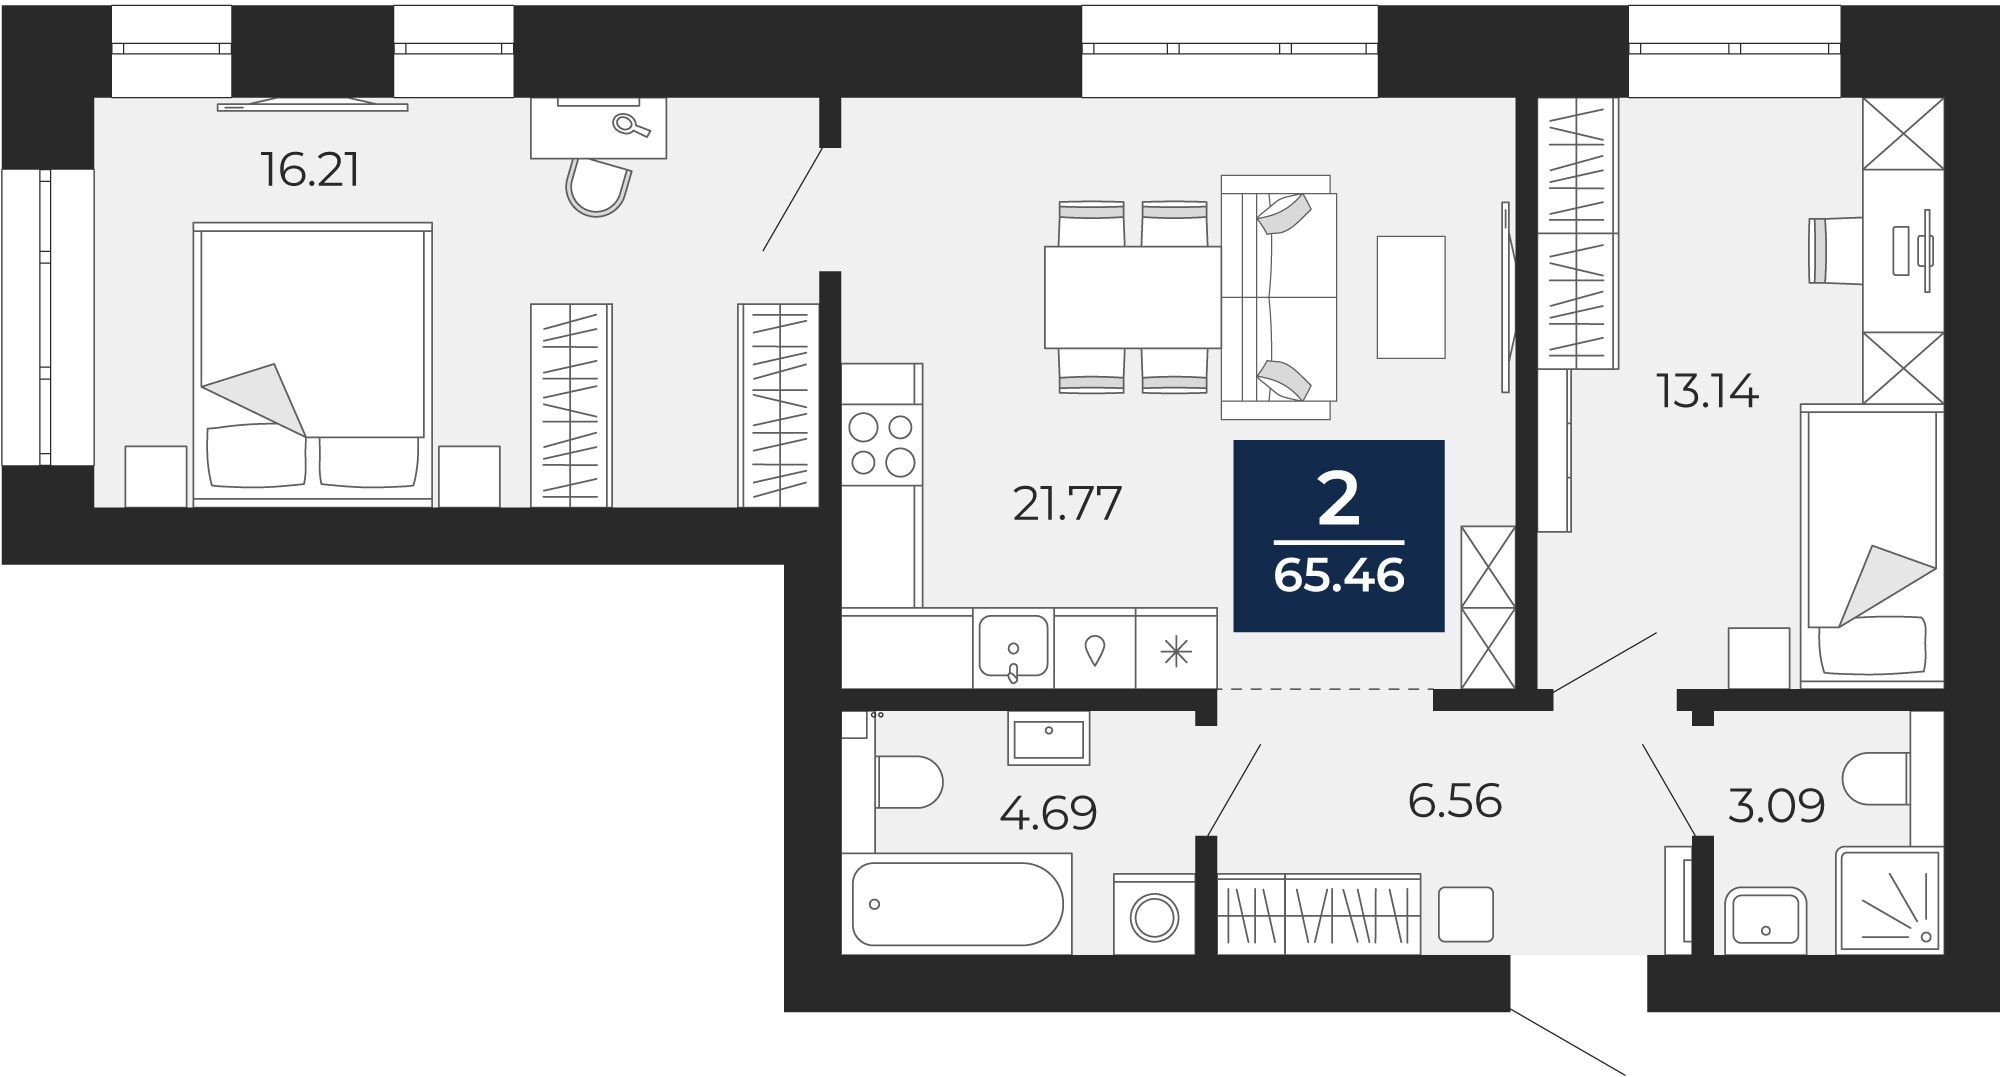 Квартира № 61, 2-комнатная, 65.46 кв. м, 3 этаж